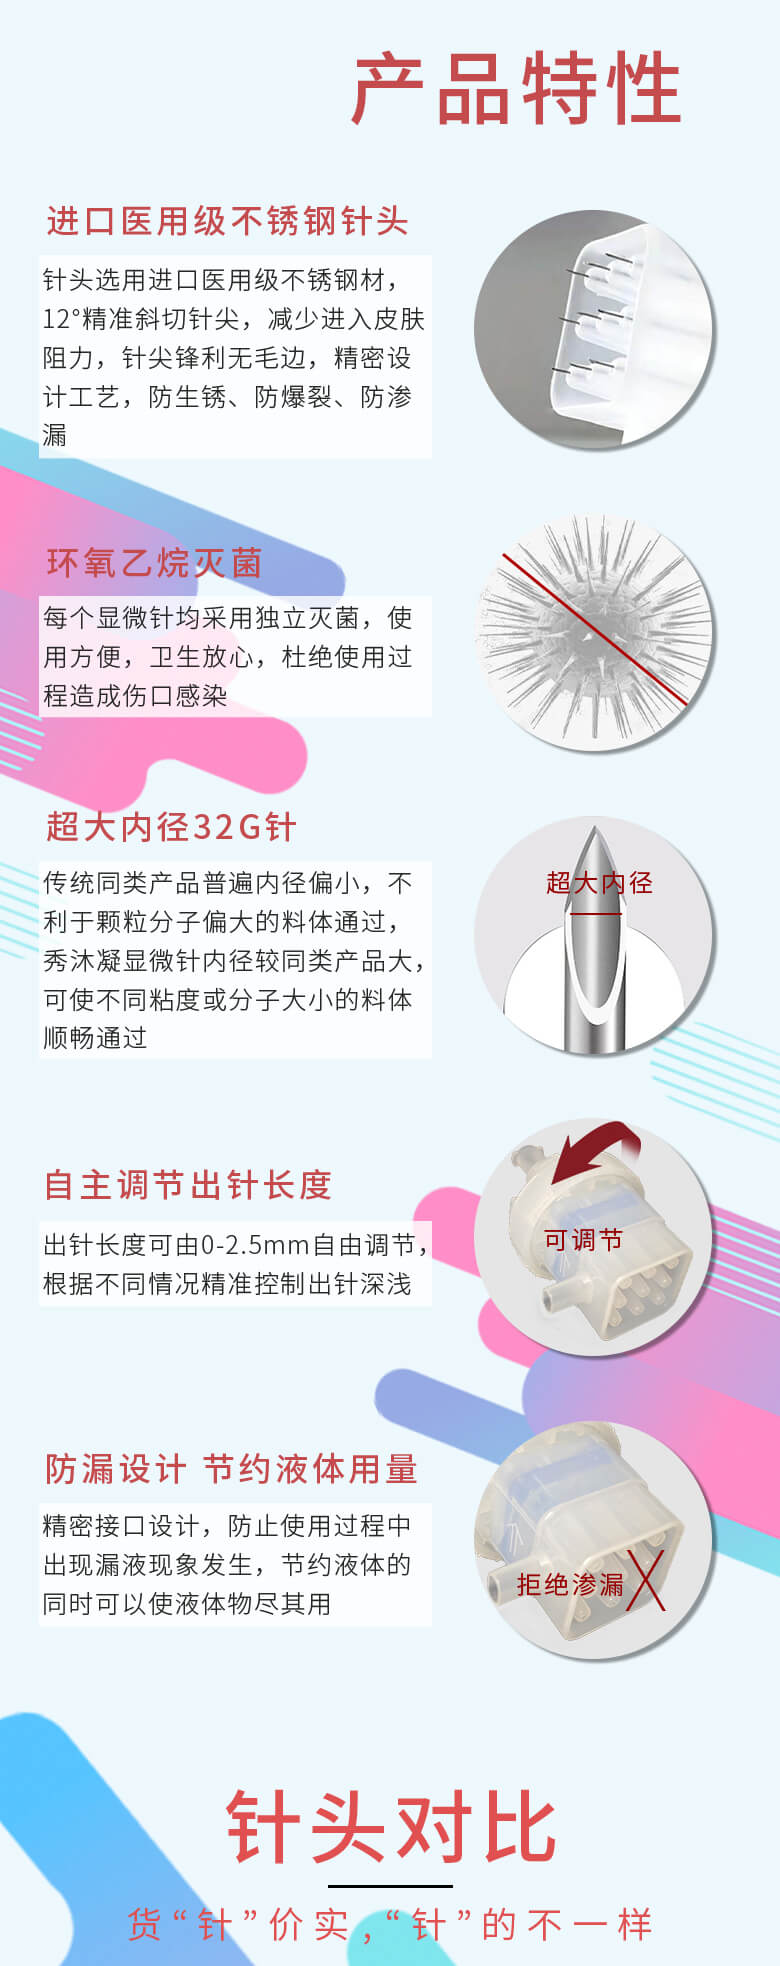 Therapeel Xiu Mu Ning Screw Multi Needle Micro Needle: -2